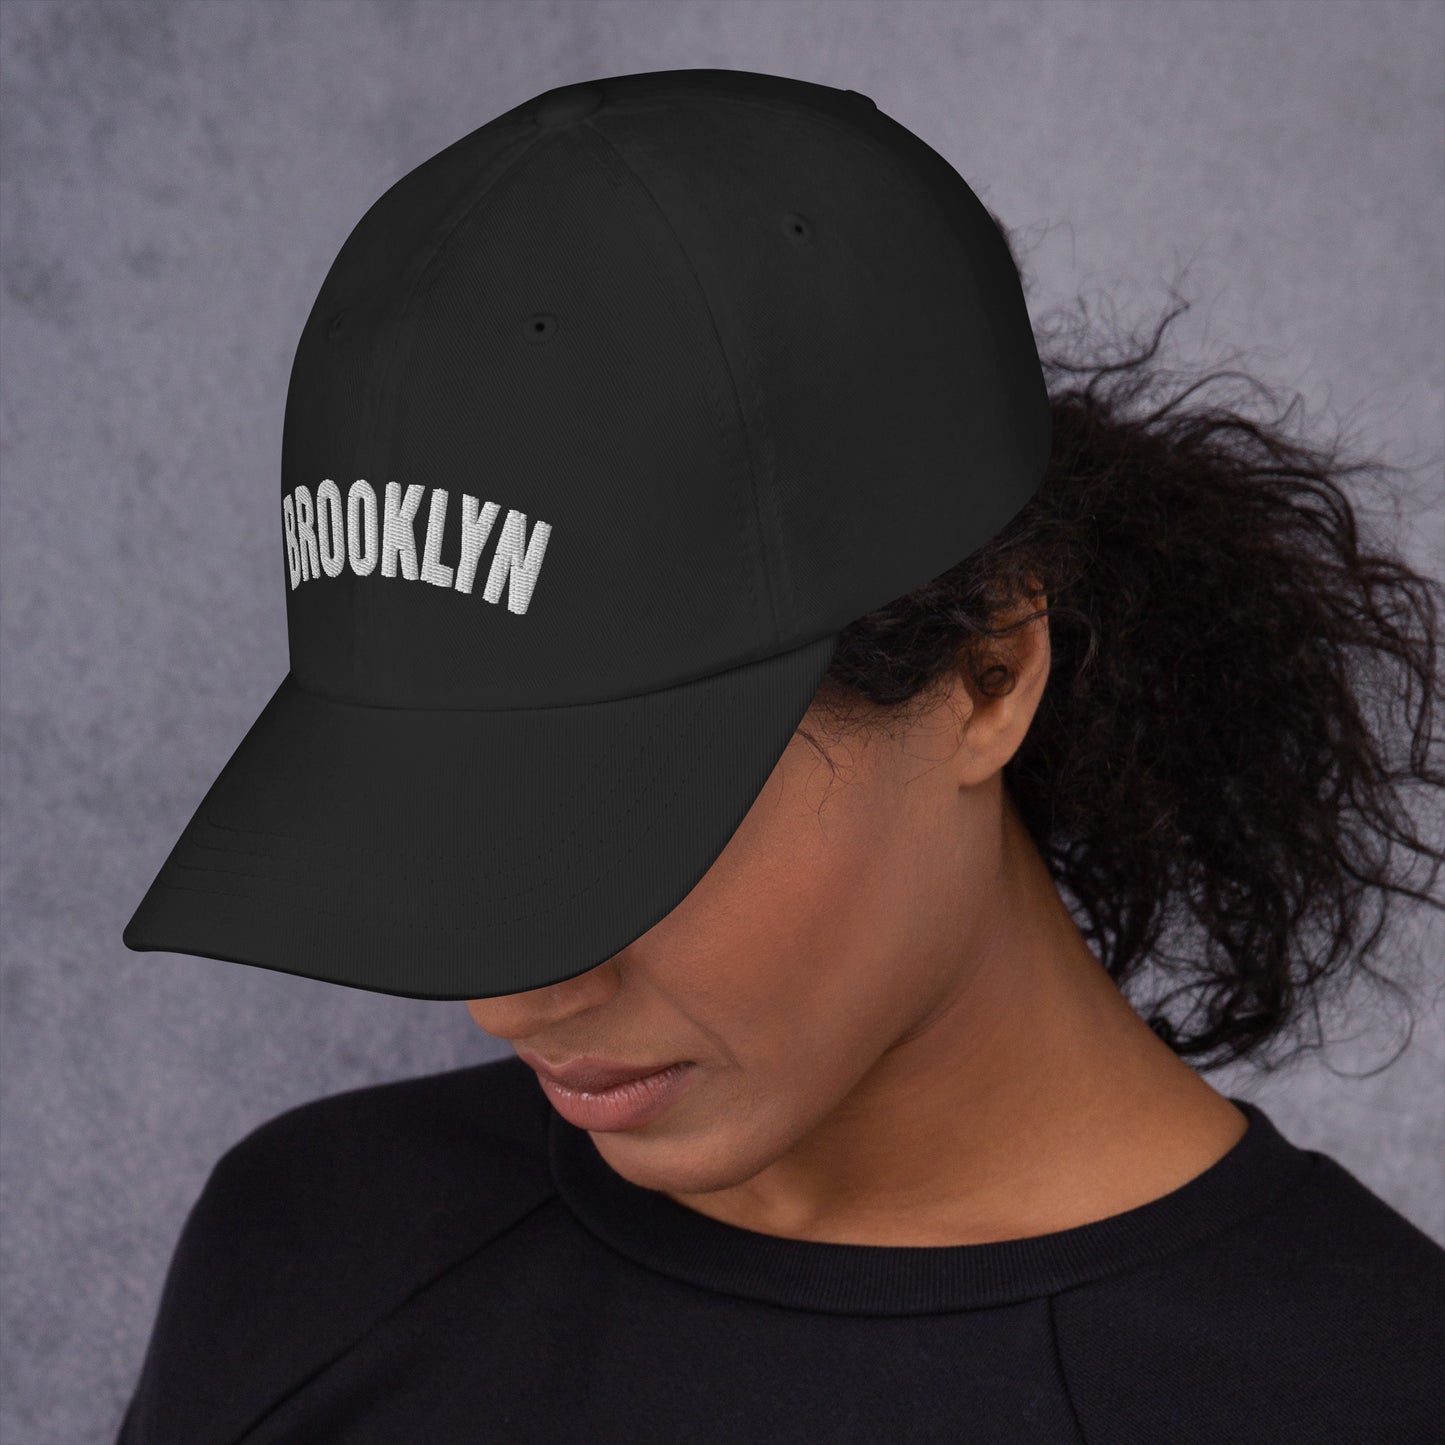 Brooklyn Baseball Cap - Black